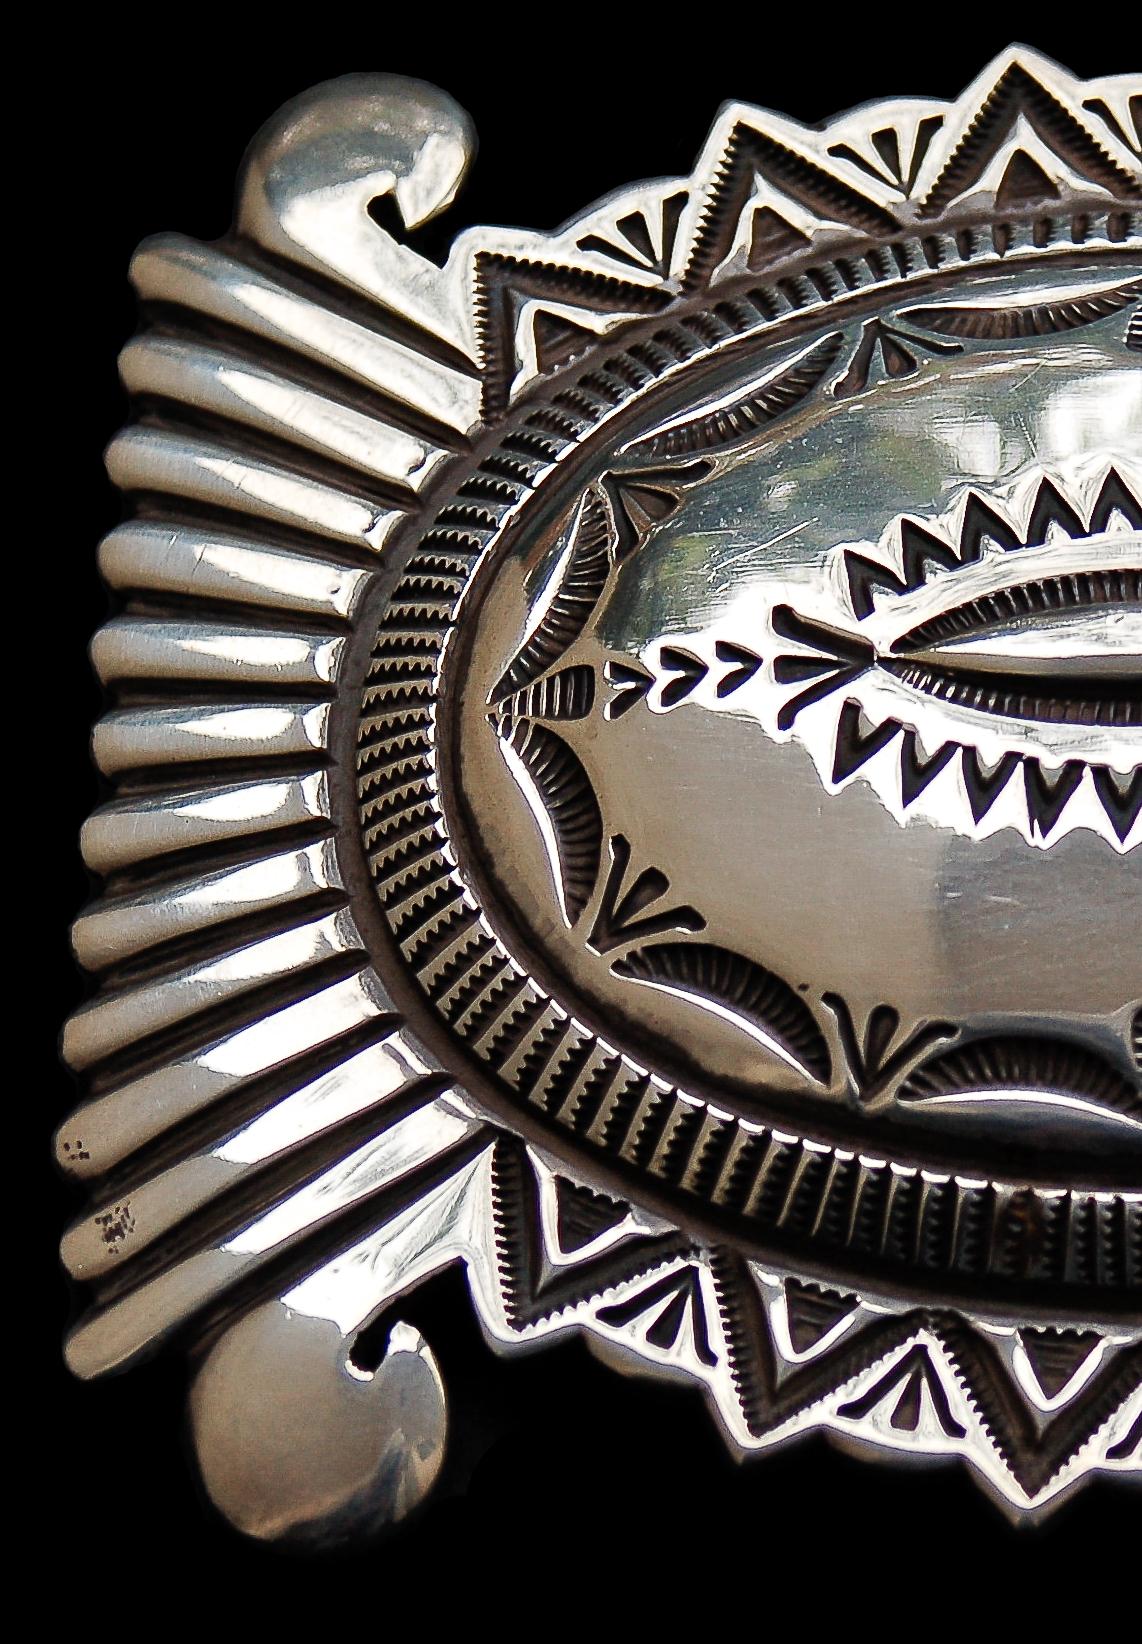 Diese herausragende Gürtelschnalle aus schwerem Sterlingsilber weist die wunderschön detaillierte Stempelarbeit auf, die zu einem Markenzeichen des Navajo-Silberschmiedemeisters Wilson Jim geworden ist. 

Signiert, 